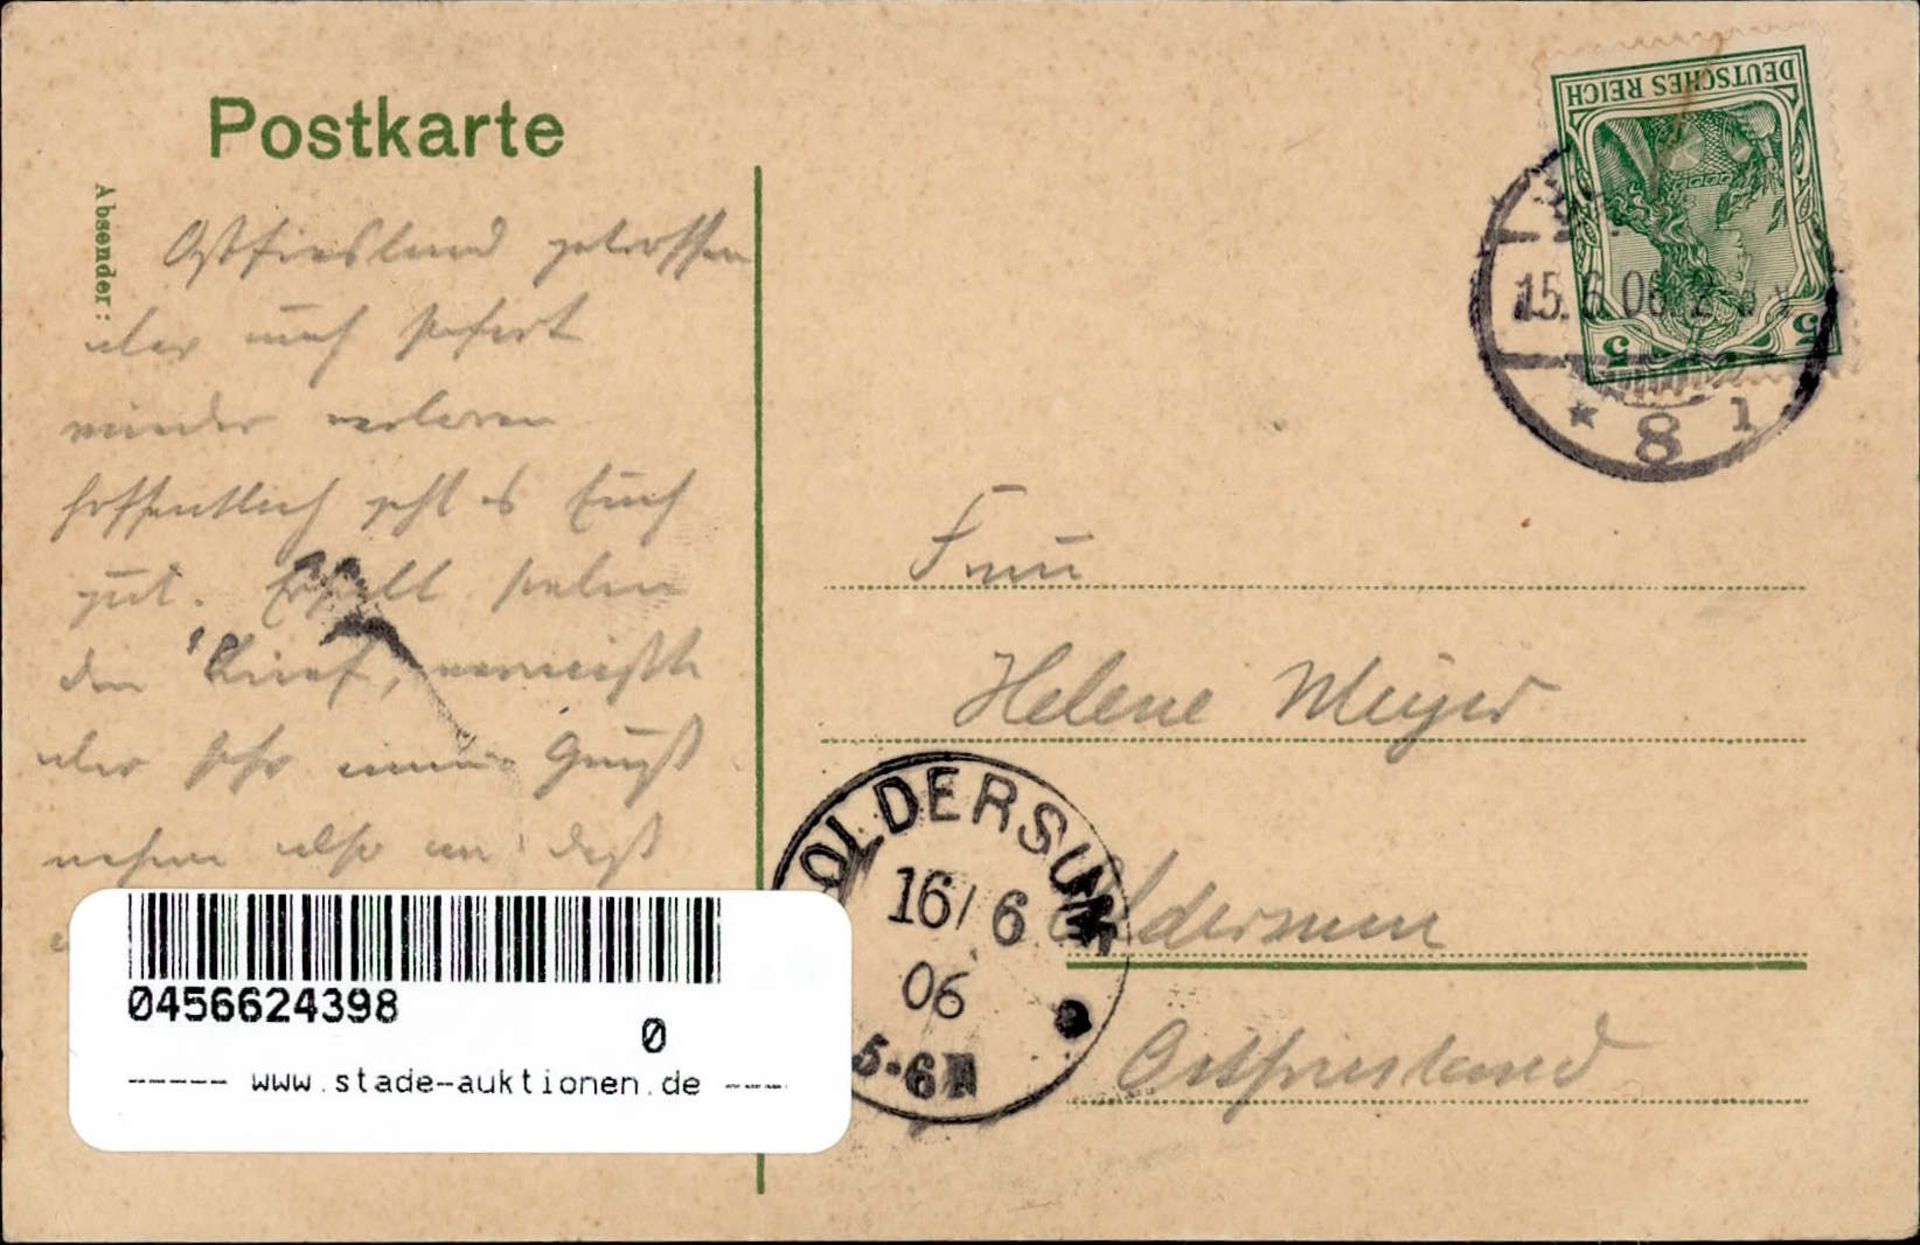 BERLIN - 20. Wanderausstellung d. DEUTSCHEN LANDWIRTSCHAFTS-GESELLSCHAFT 1906 - Pferde d. Königöl. - Bild 2 aus 2